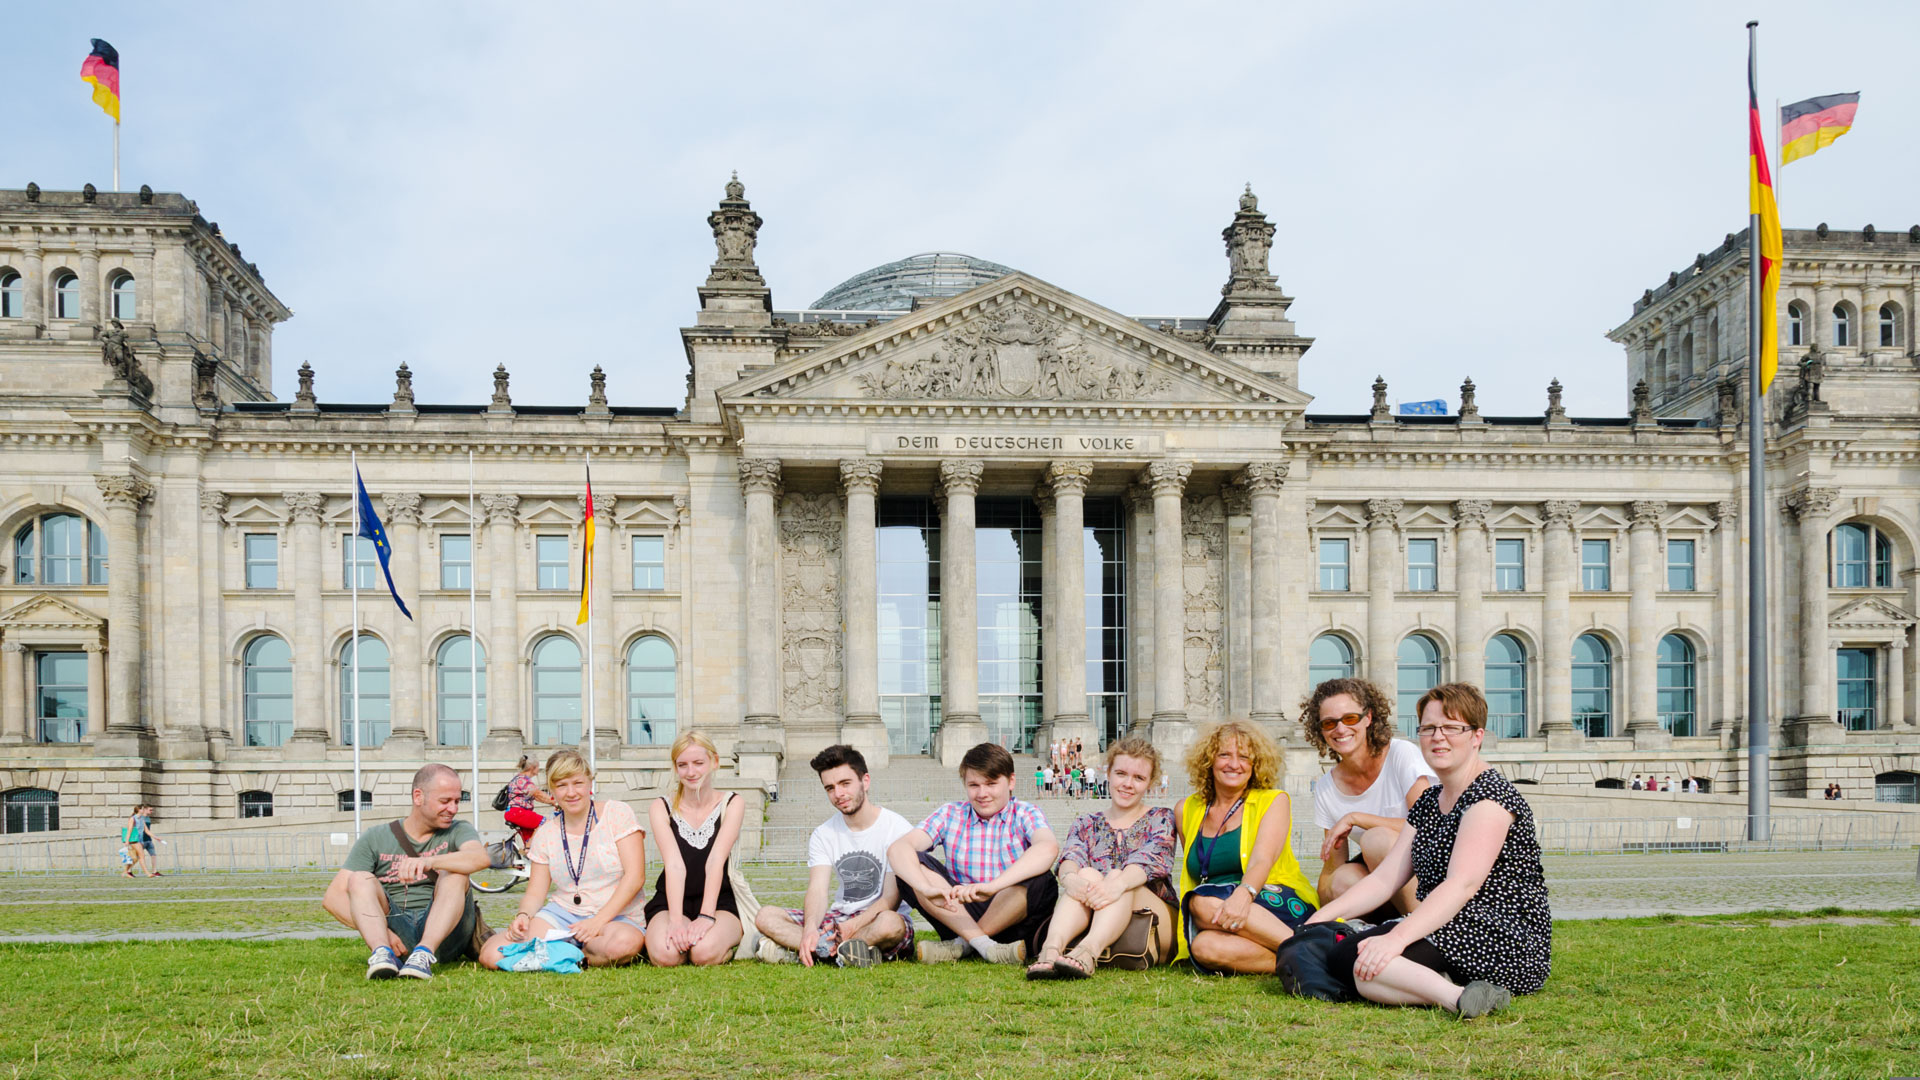 Los paseos por la ciudad, aquí al Reichstag, forman parte del programa de tiempo libre.